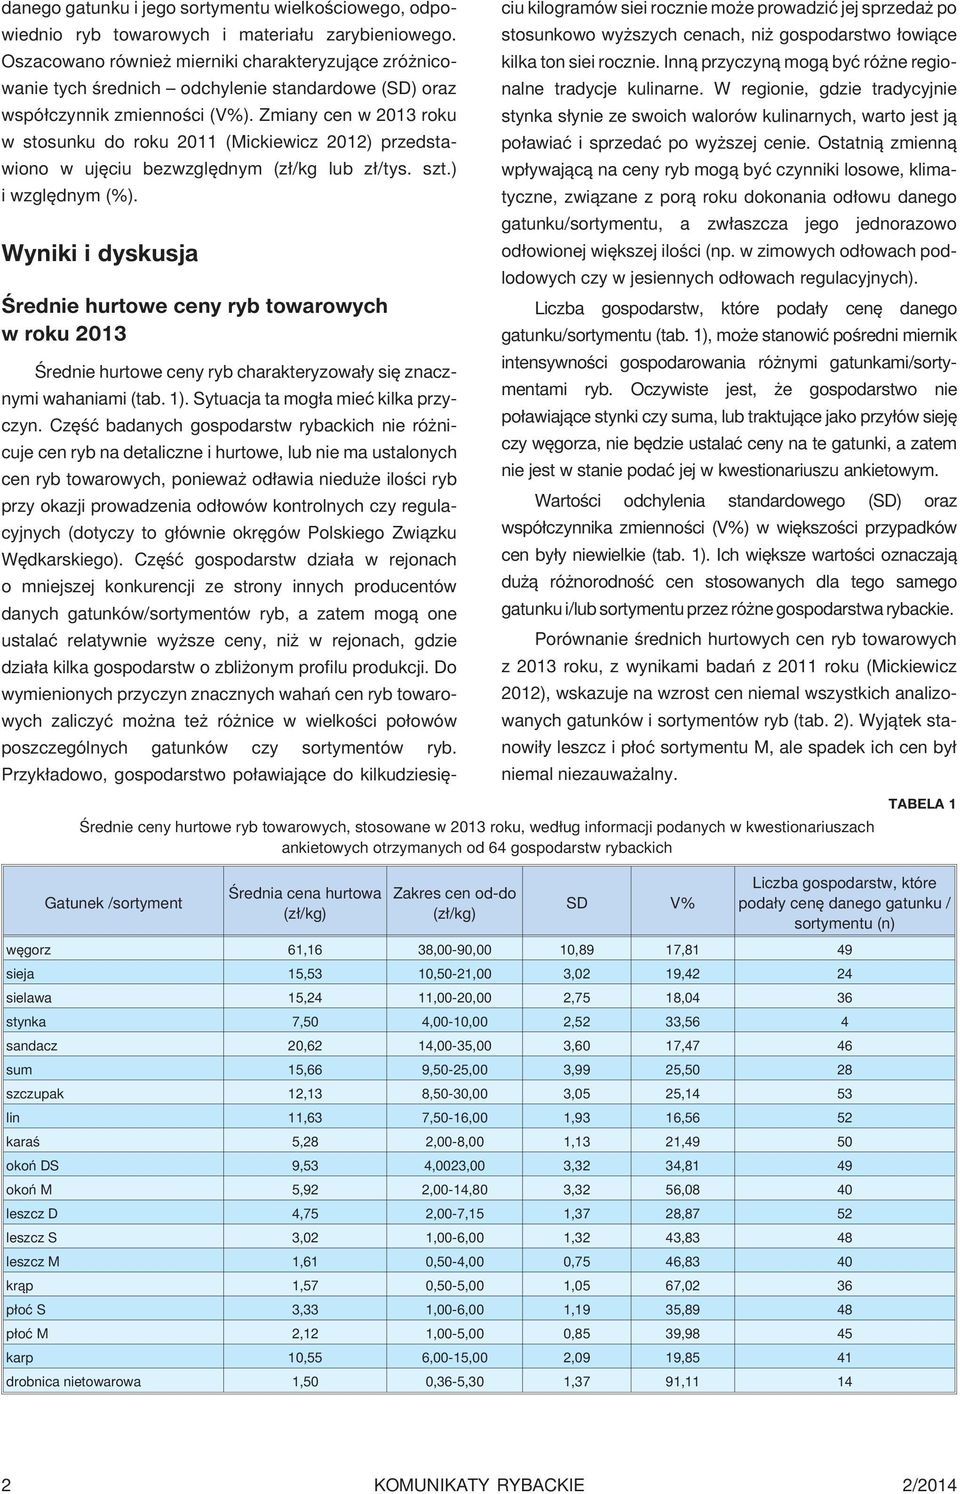 Zmiany cen w 2013 roku w stosunku do roku 2011 (Mickiewicz 2012) przedstawiono w ujêciu bezwzglêdnym (z³/kg lub z³/tys. szt.) i wzglêdnym (%).